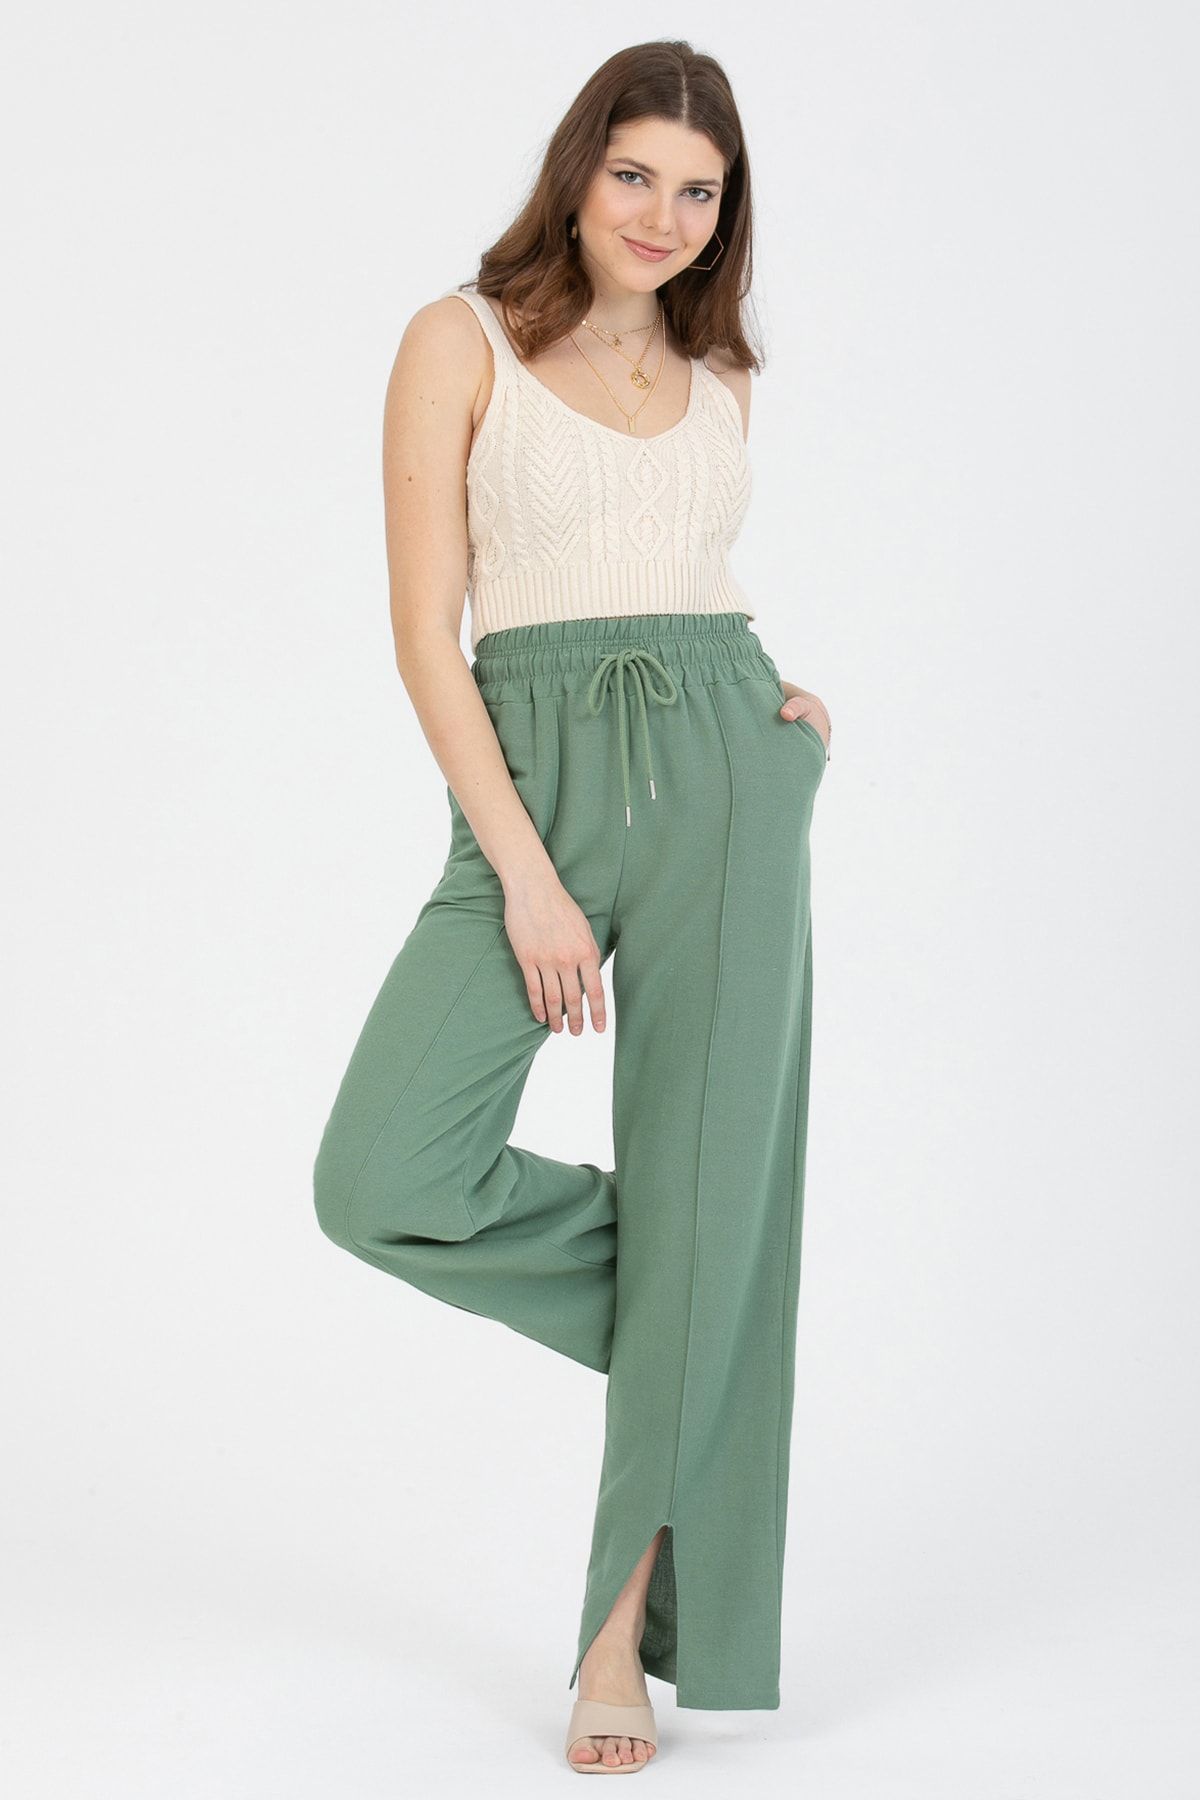 MD trend Kadın Mint Yeşil Beli Lastikli Bağlamalı Önü Dikiş Detaylı Paça Yırtmaçlı Keten Pantolon